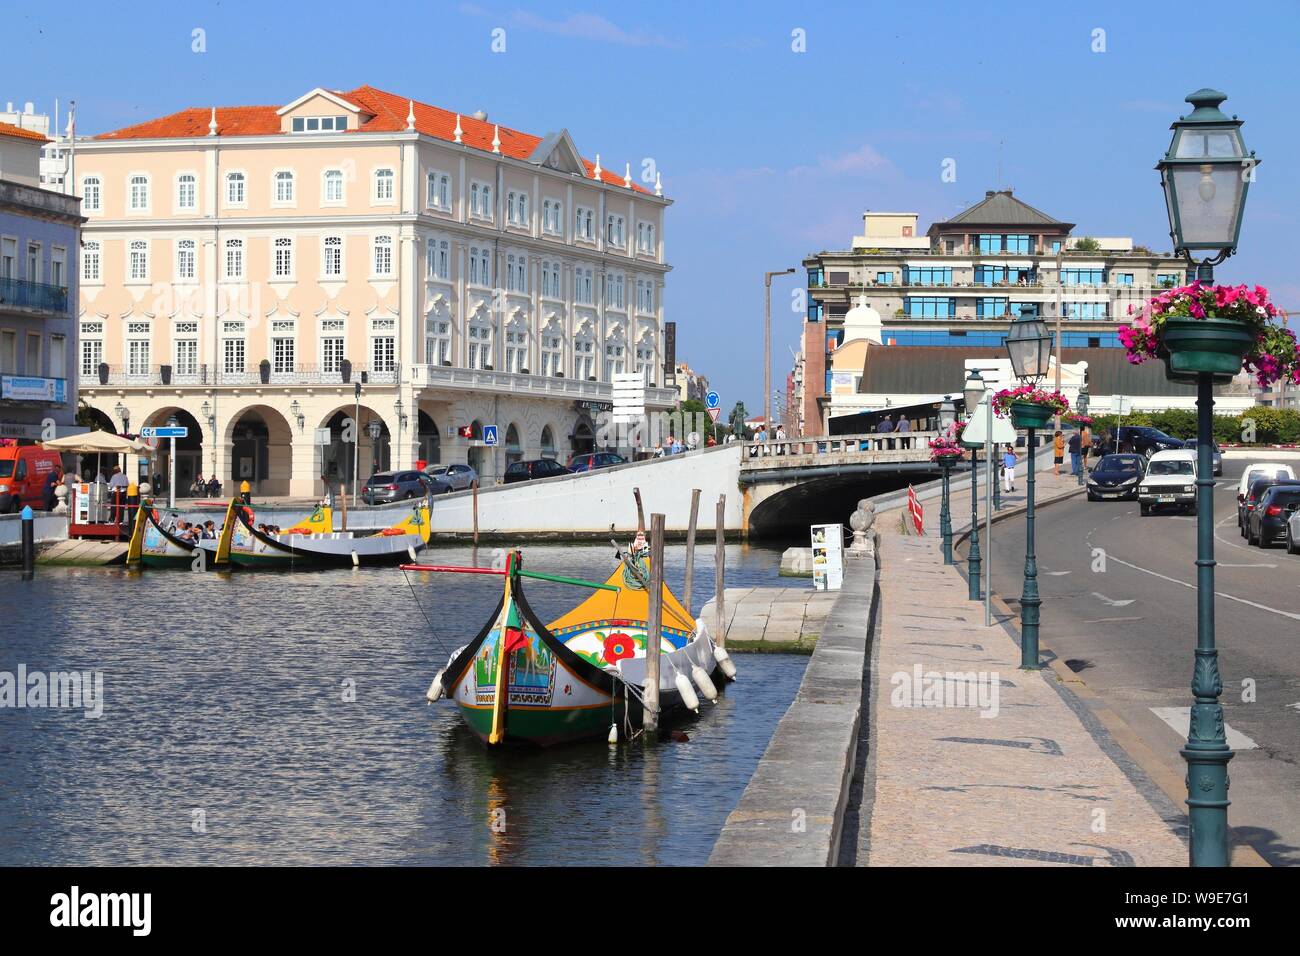 AVEIRO, PORTUGAL - Mai 23, 2018 : canal Aveiro gondola-style bateaux au Portugal. Aveiro est connu comme la Venise du Portugal en raison de ses canaux. Banque D'Images